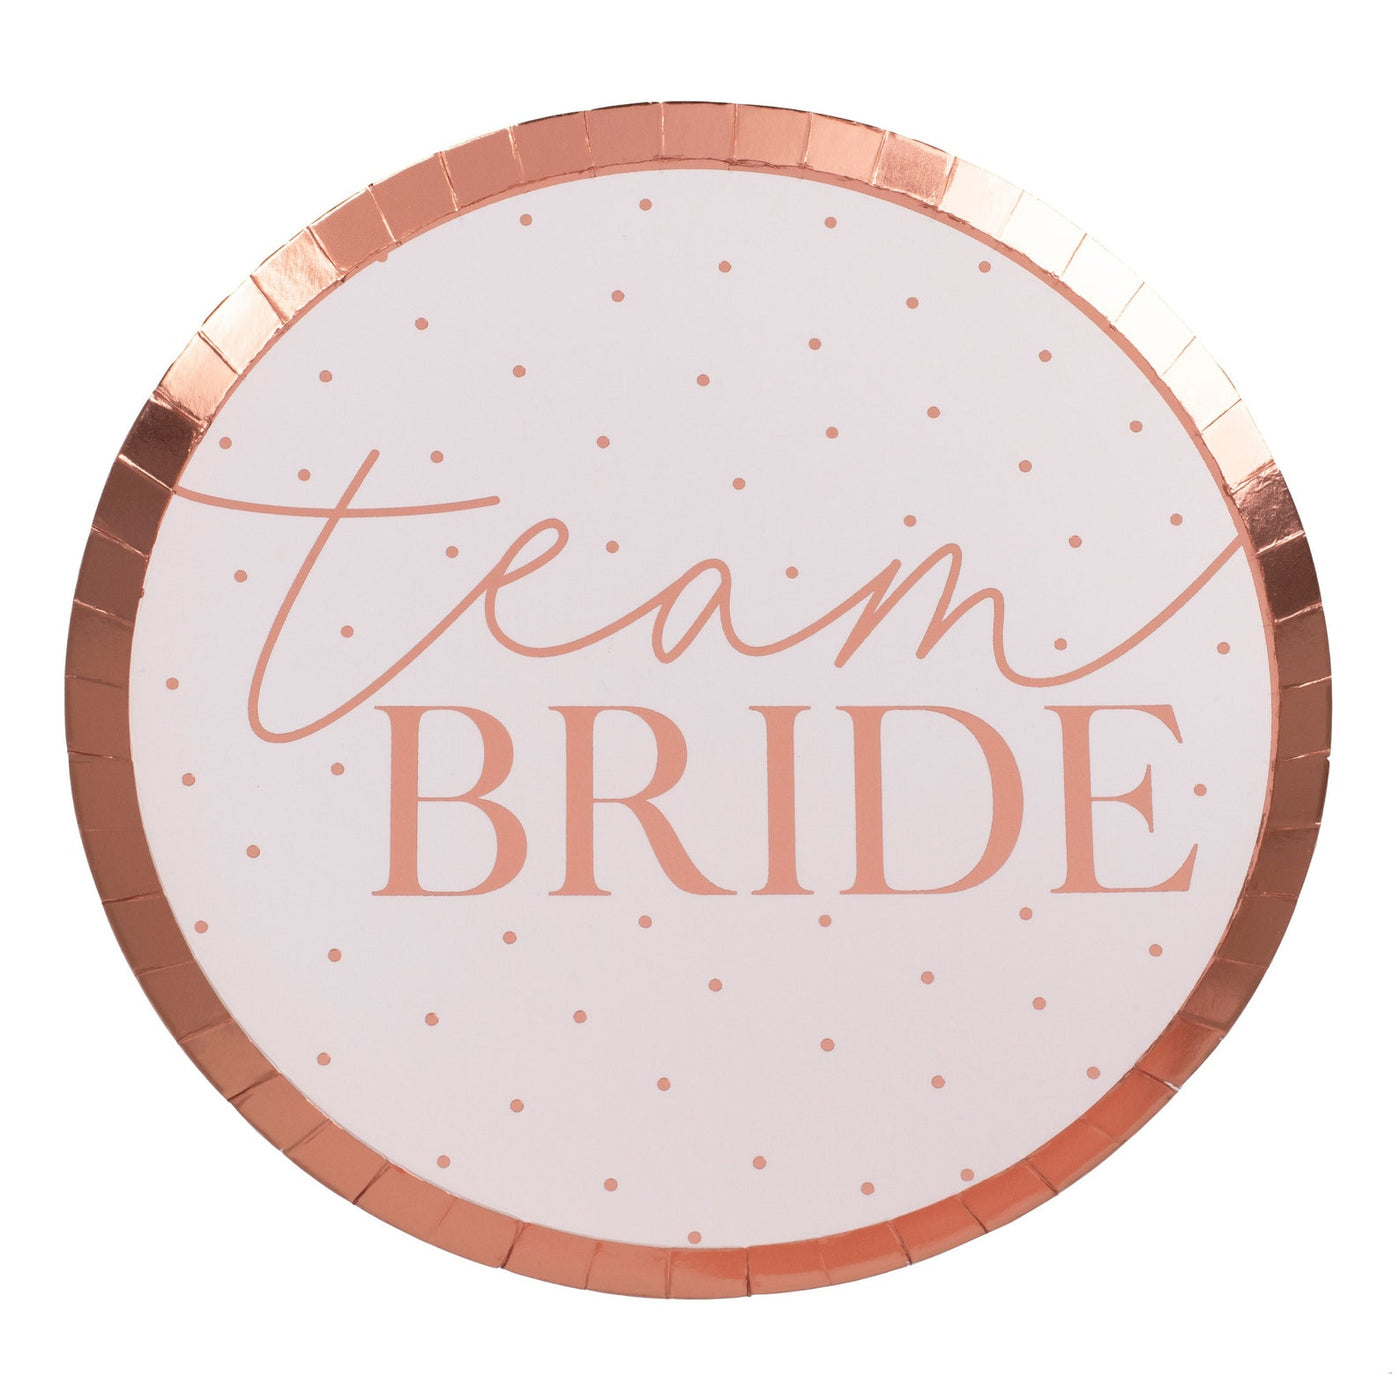 Team Bride Pappteller (8 St.) - blush